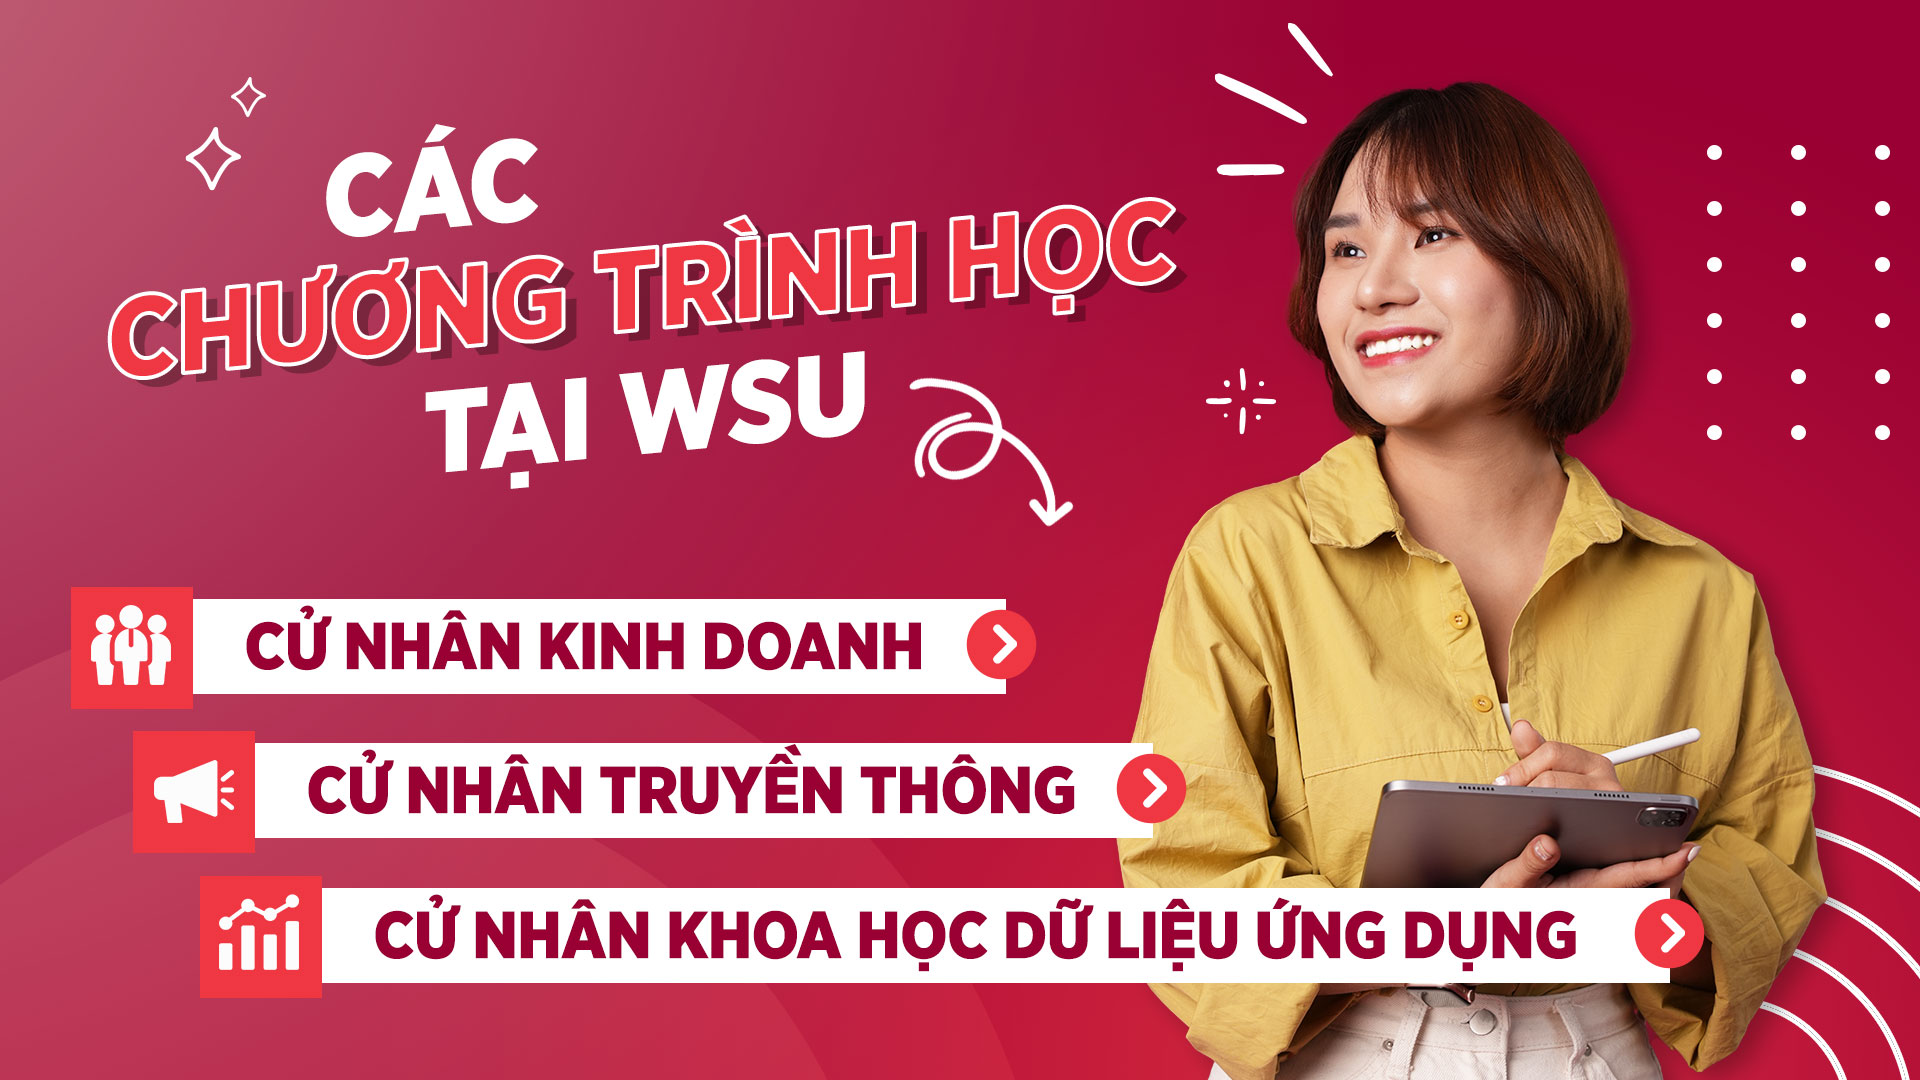 Đại học Western Sydney, Cơ sở Việt Nam hiện đang đào tạo các chương trình: Cử nhân Kinh doanh, Cử nhân Truyền thông và Cử nhân Khoa học Dữ liệu ứng dụng